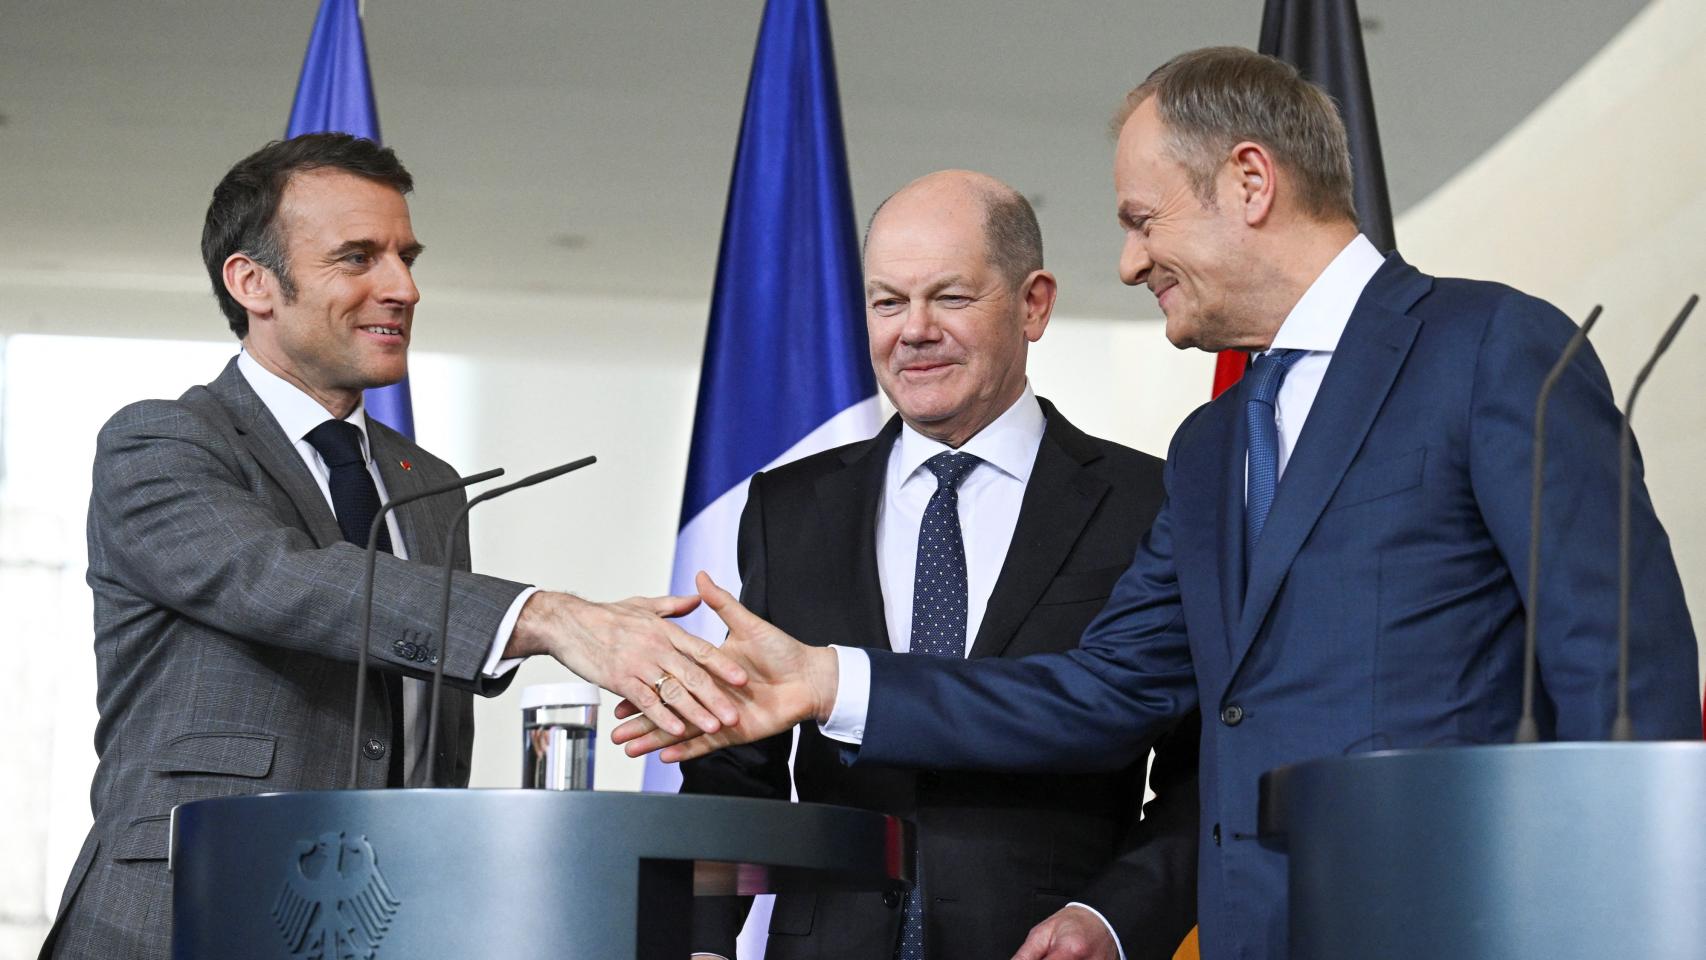 Emmanuel Macron, Olaf Scholz y Donald Tusk antes de entrar al foro de consulta Triángulo de Weimar, este viernes.